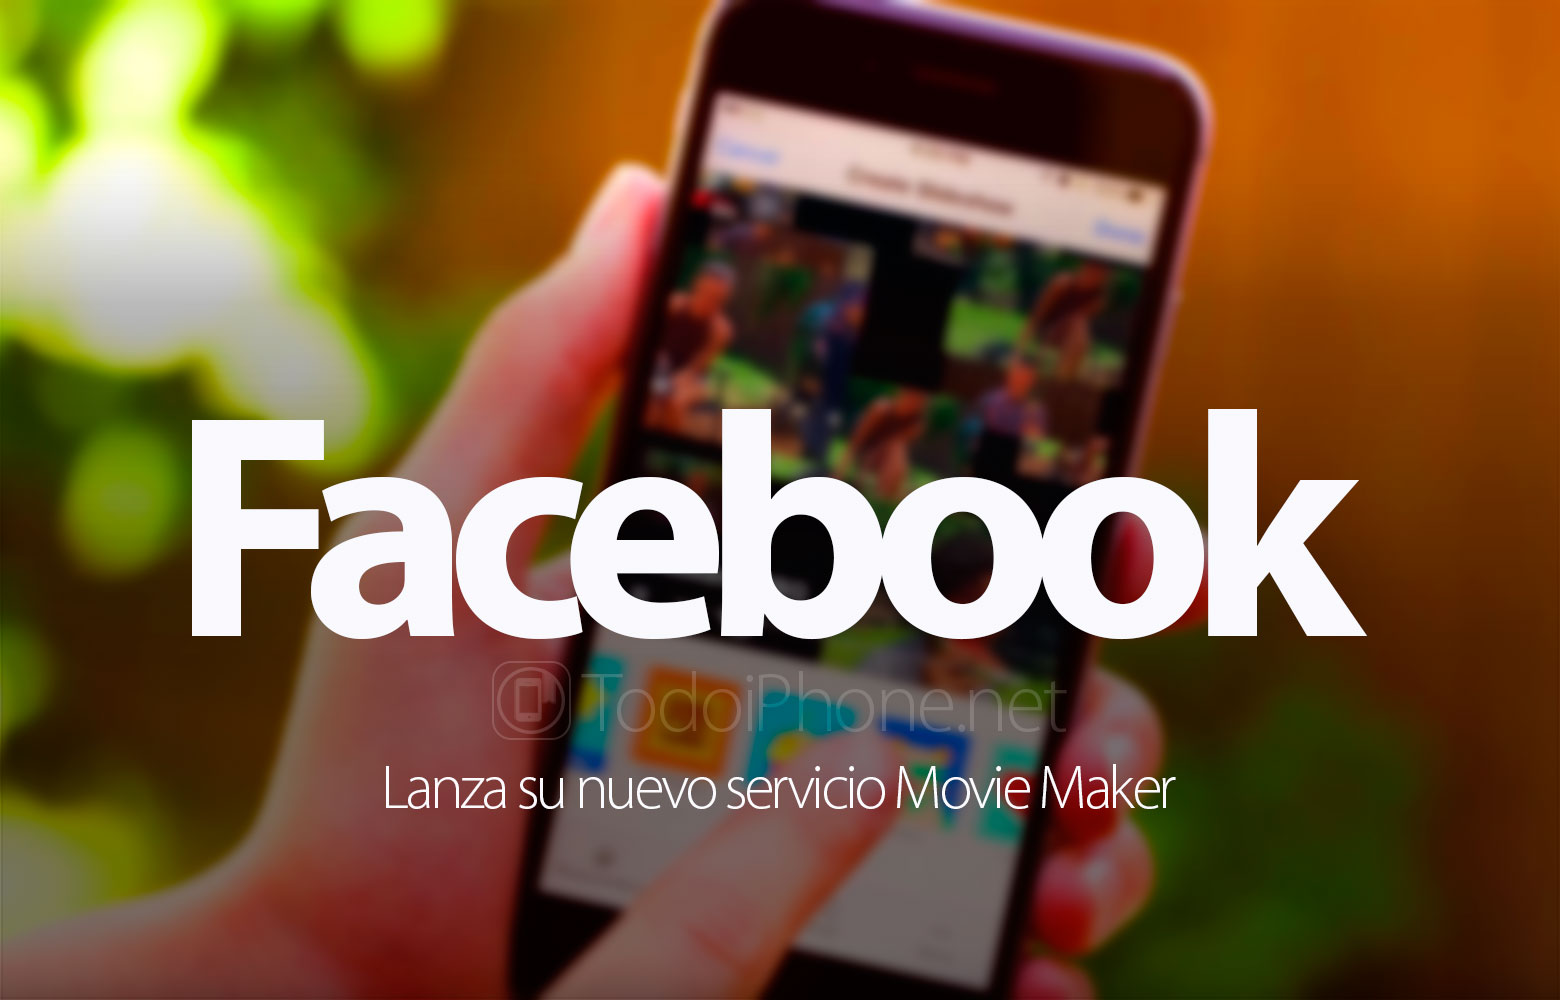 movie-maker-nuevo-servicio-facebook